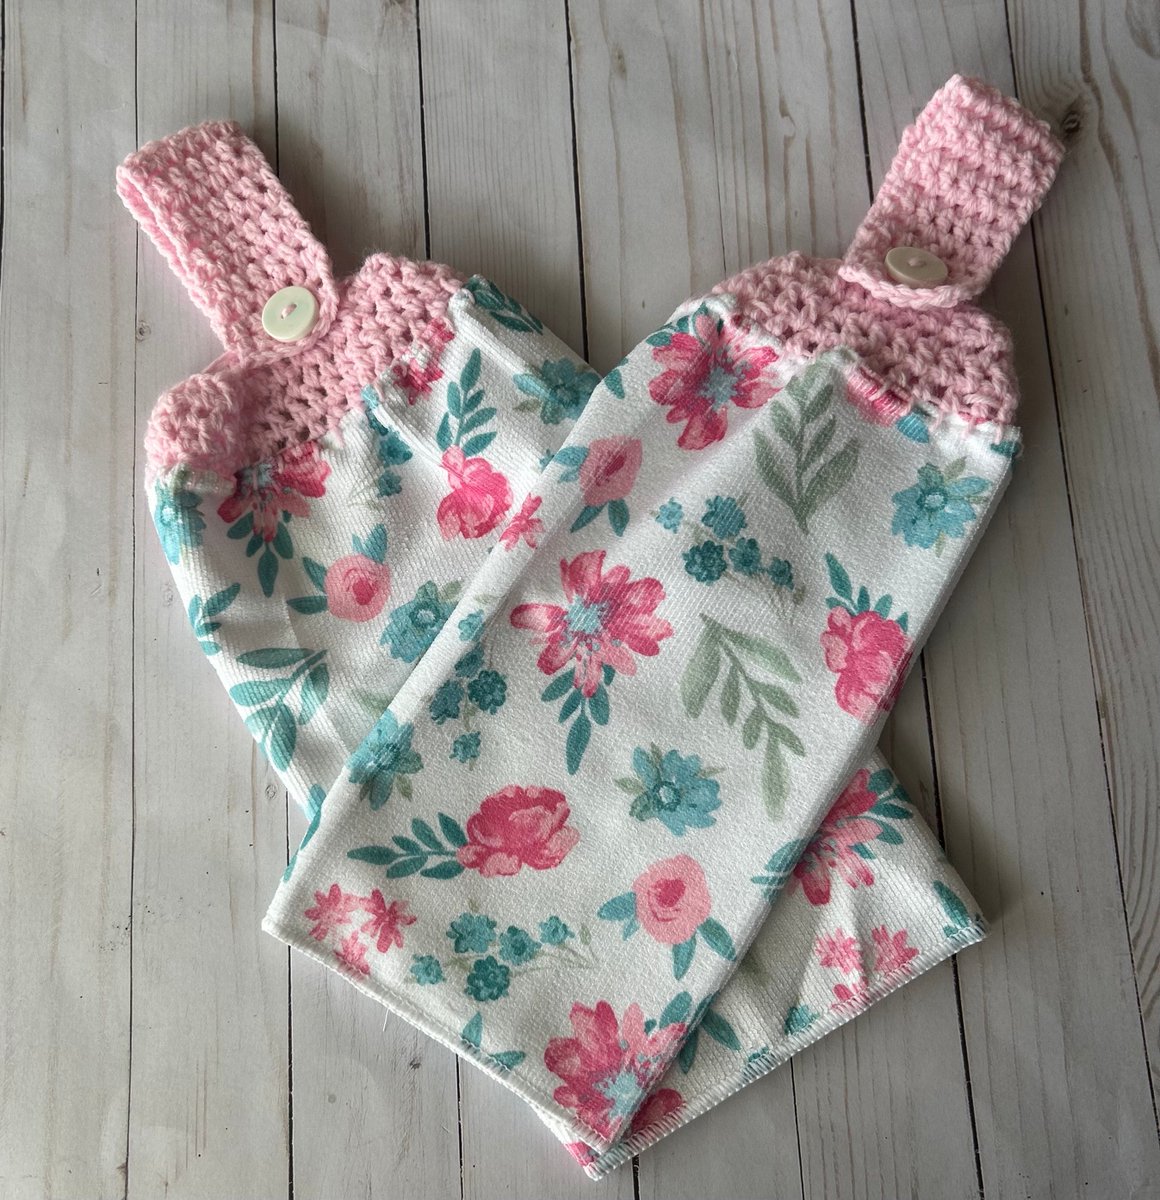 2 Spring kitchen towels, Pink Floral kitchen towels craftymom75.etsy.com/listing/143184… #craftbizparty #craftshout #PinkKitchenTowel